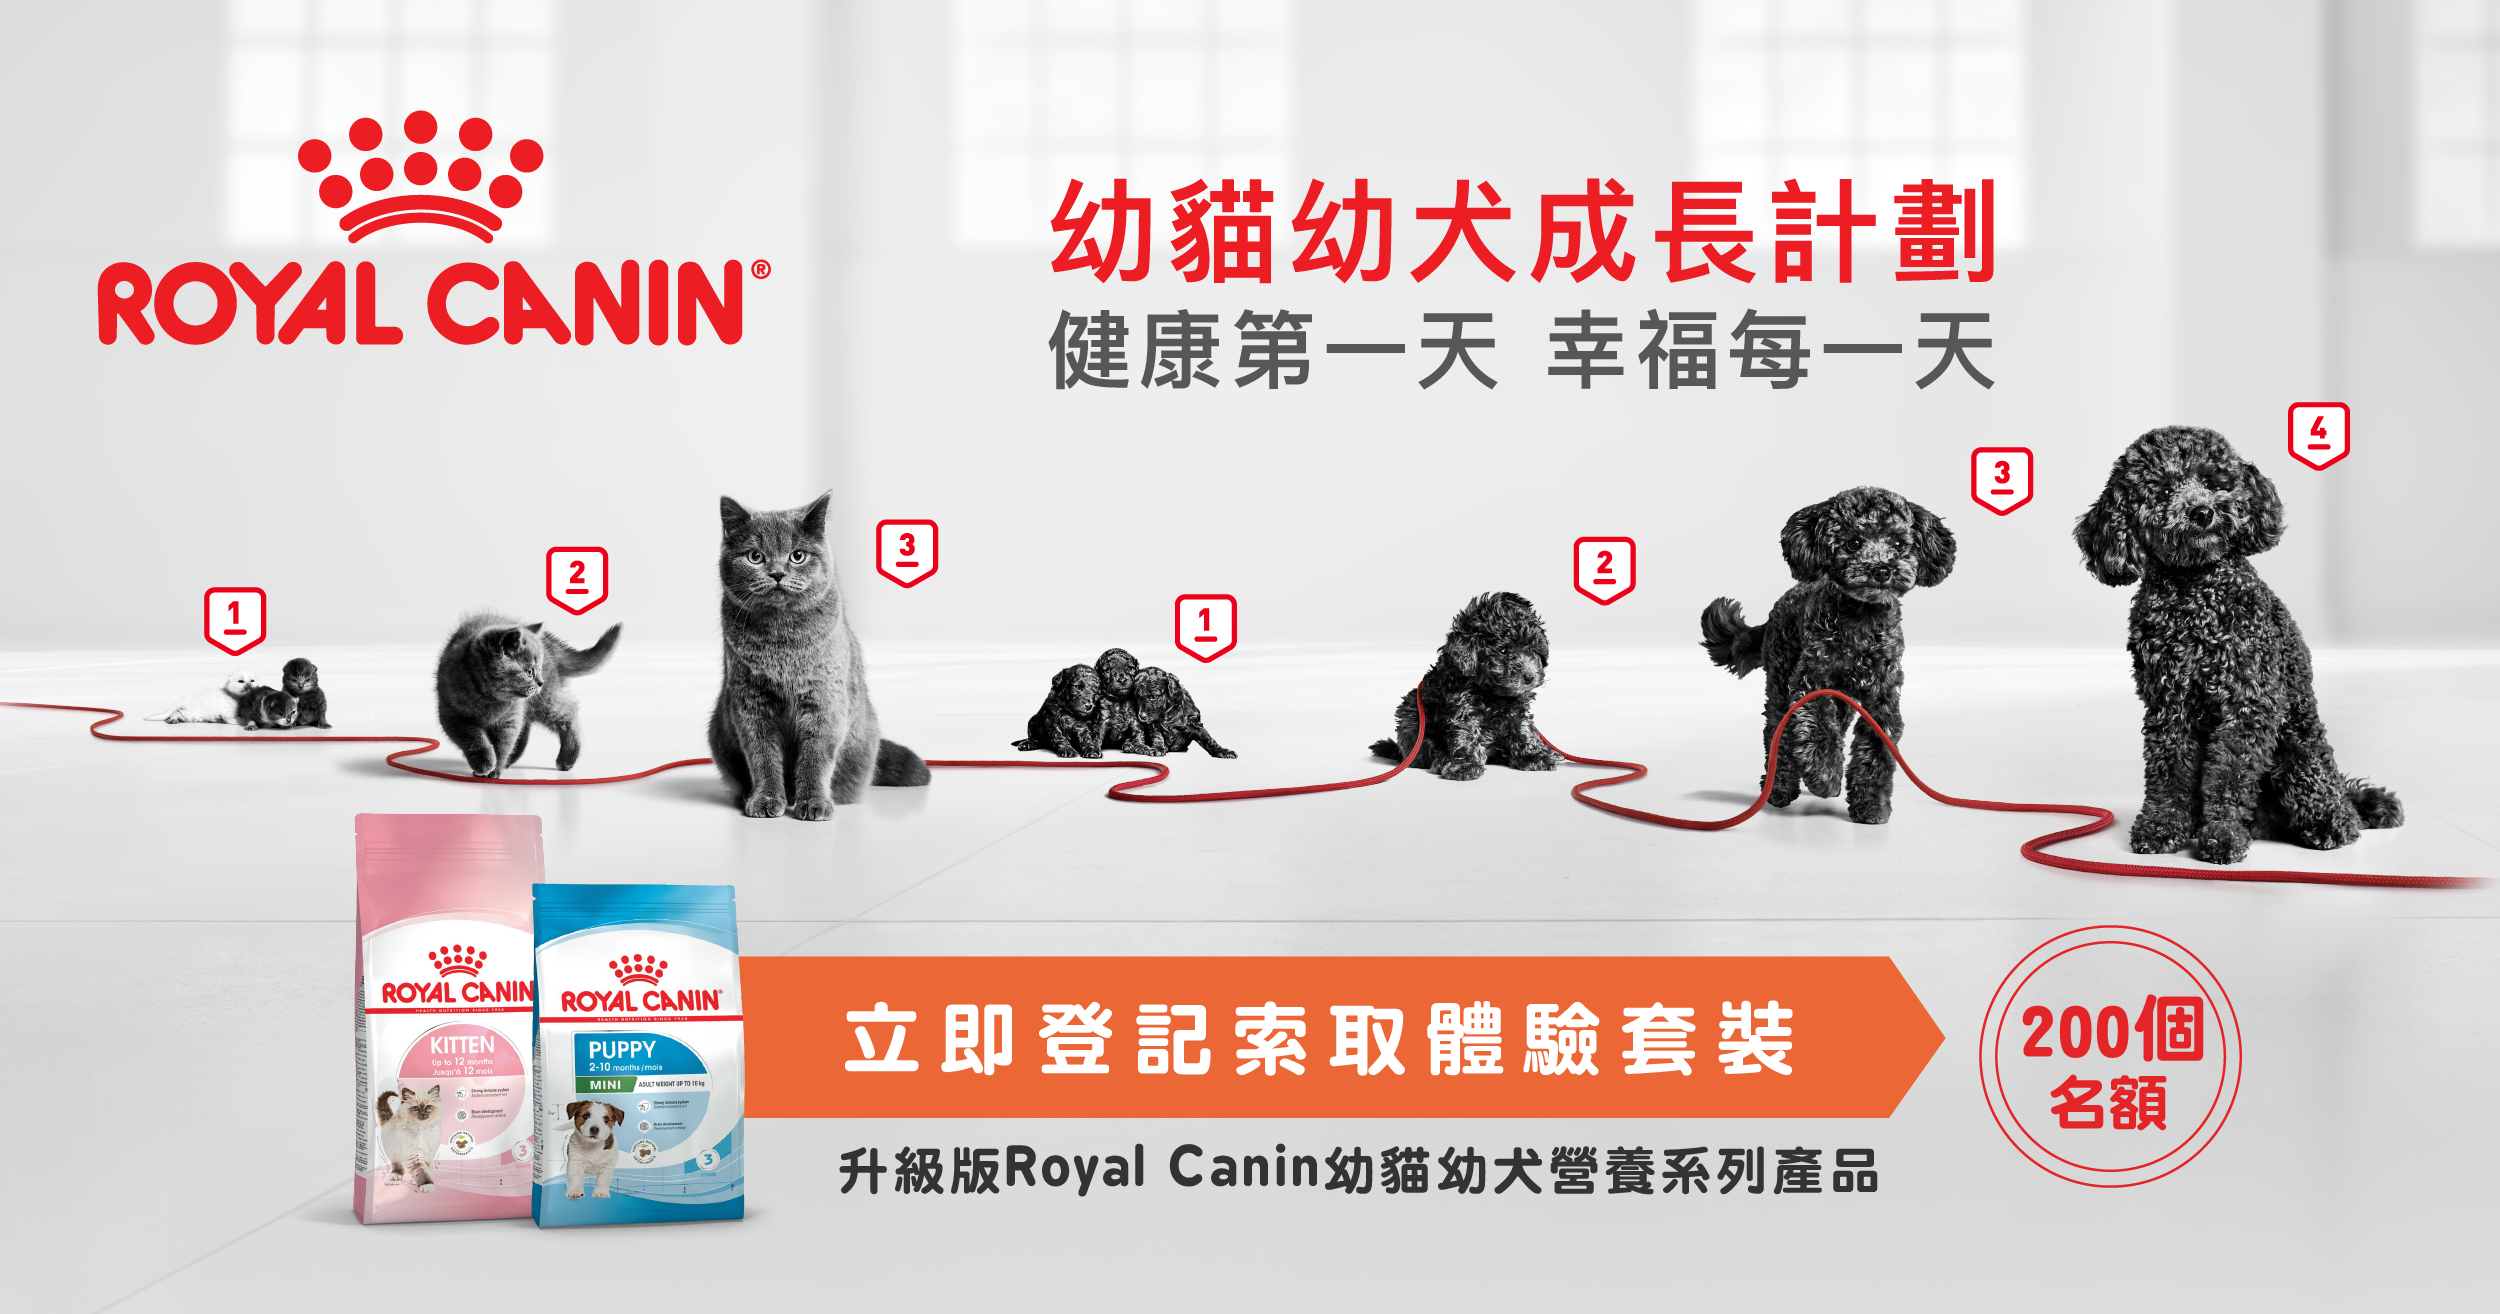 立即登記 | 索取升級版Royal Canin幼貓幼犬營養系列產品體驗裝